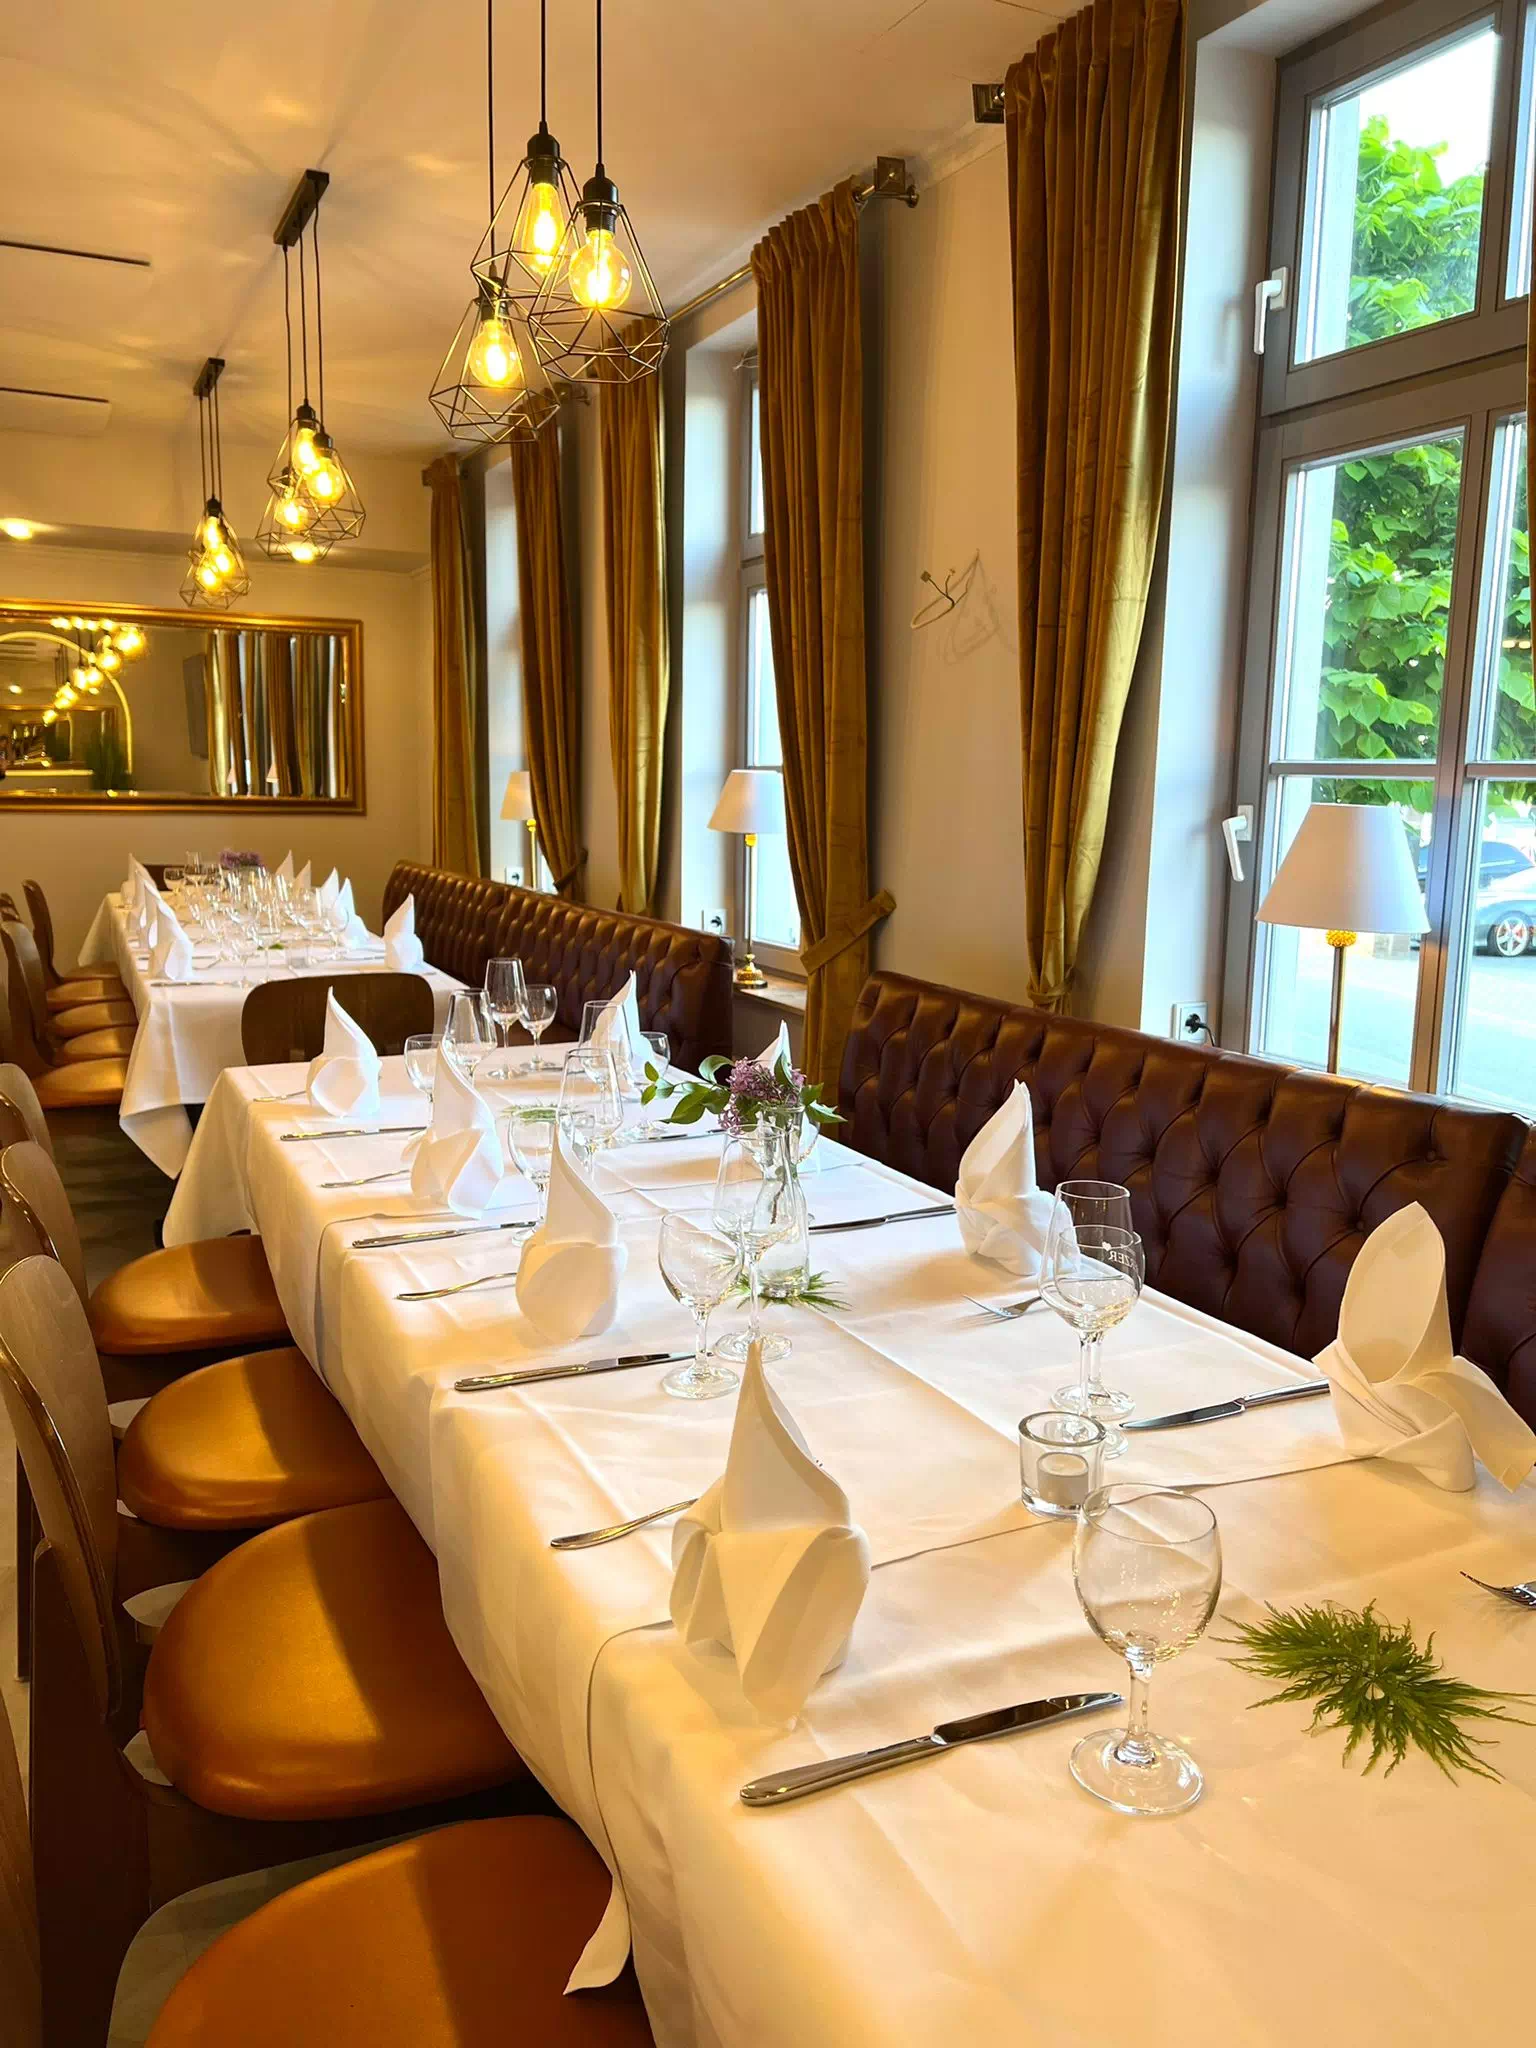 Galerie Cafe - Hotel Restaurant Zur Kaiserpfalz